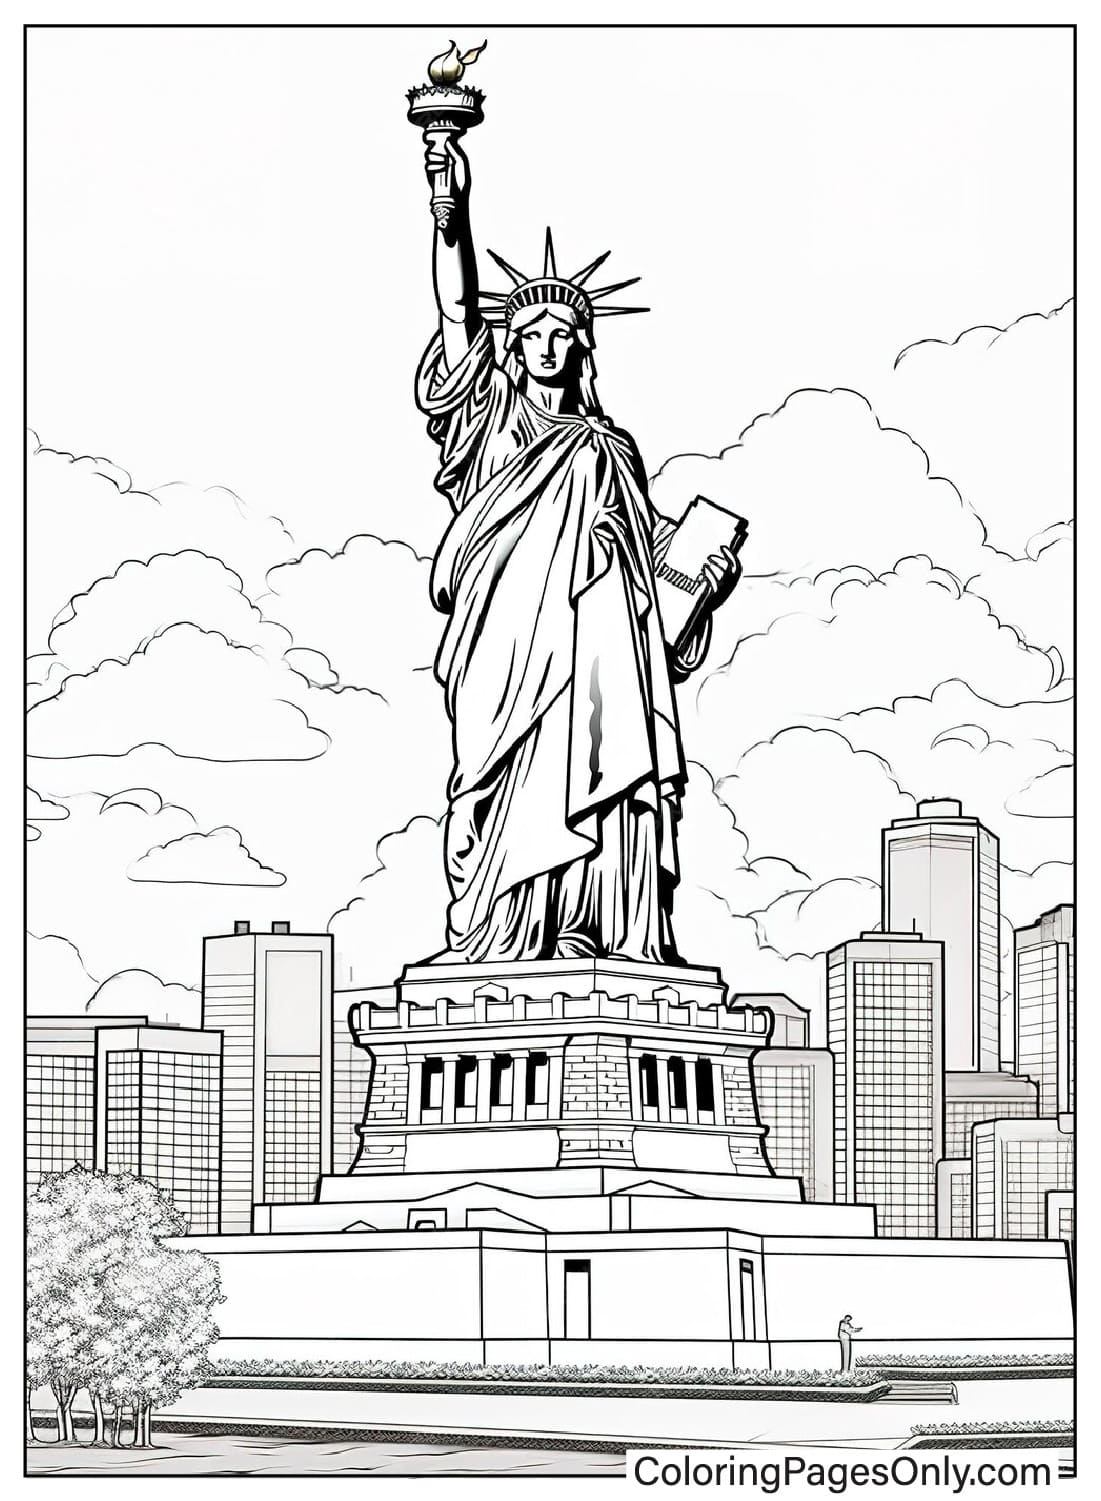 Página para colorear realista de la Estatua de la Libertad de la Estatua de la Libertad